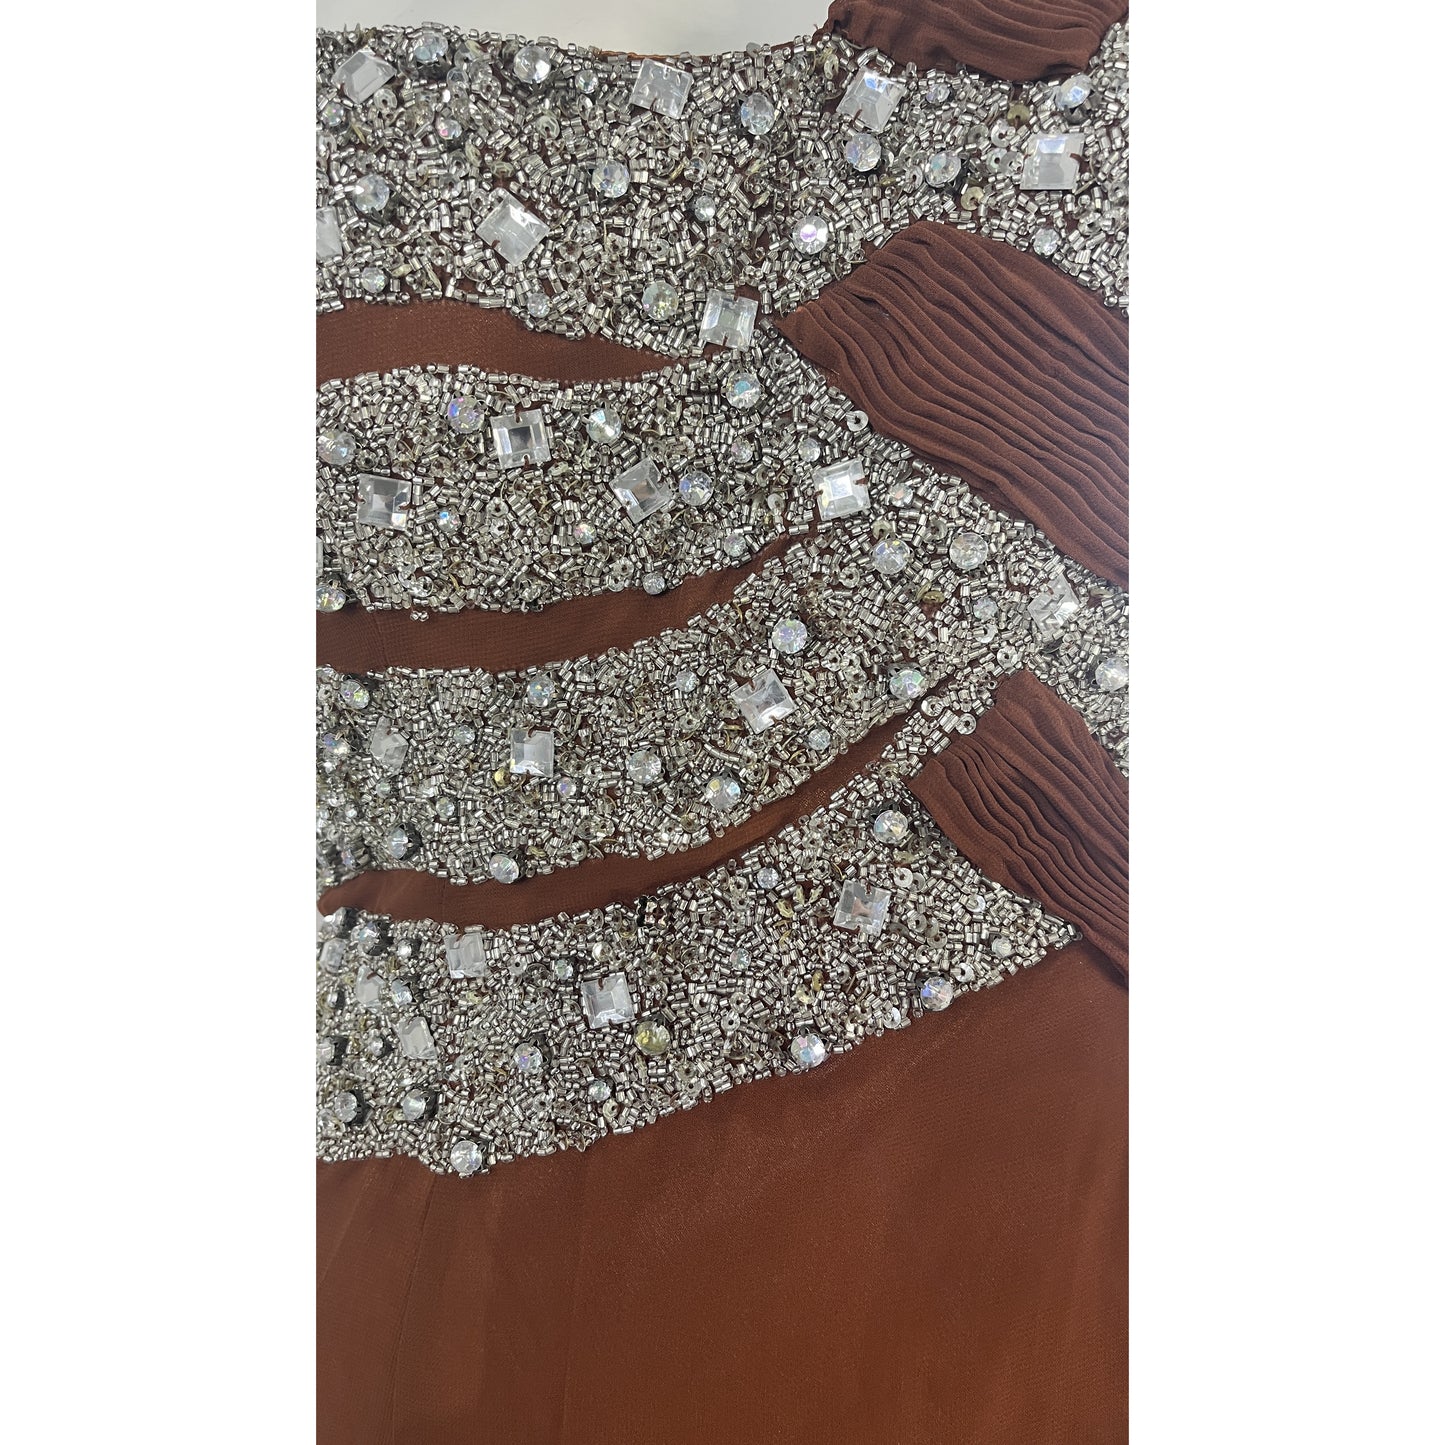 Riva Designs Gown One-Shoulder-Halter Embellished Leg-Slit Brown, Silver Size 8 SKU 000369-1